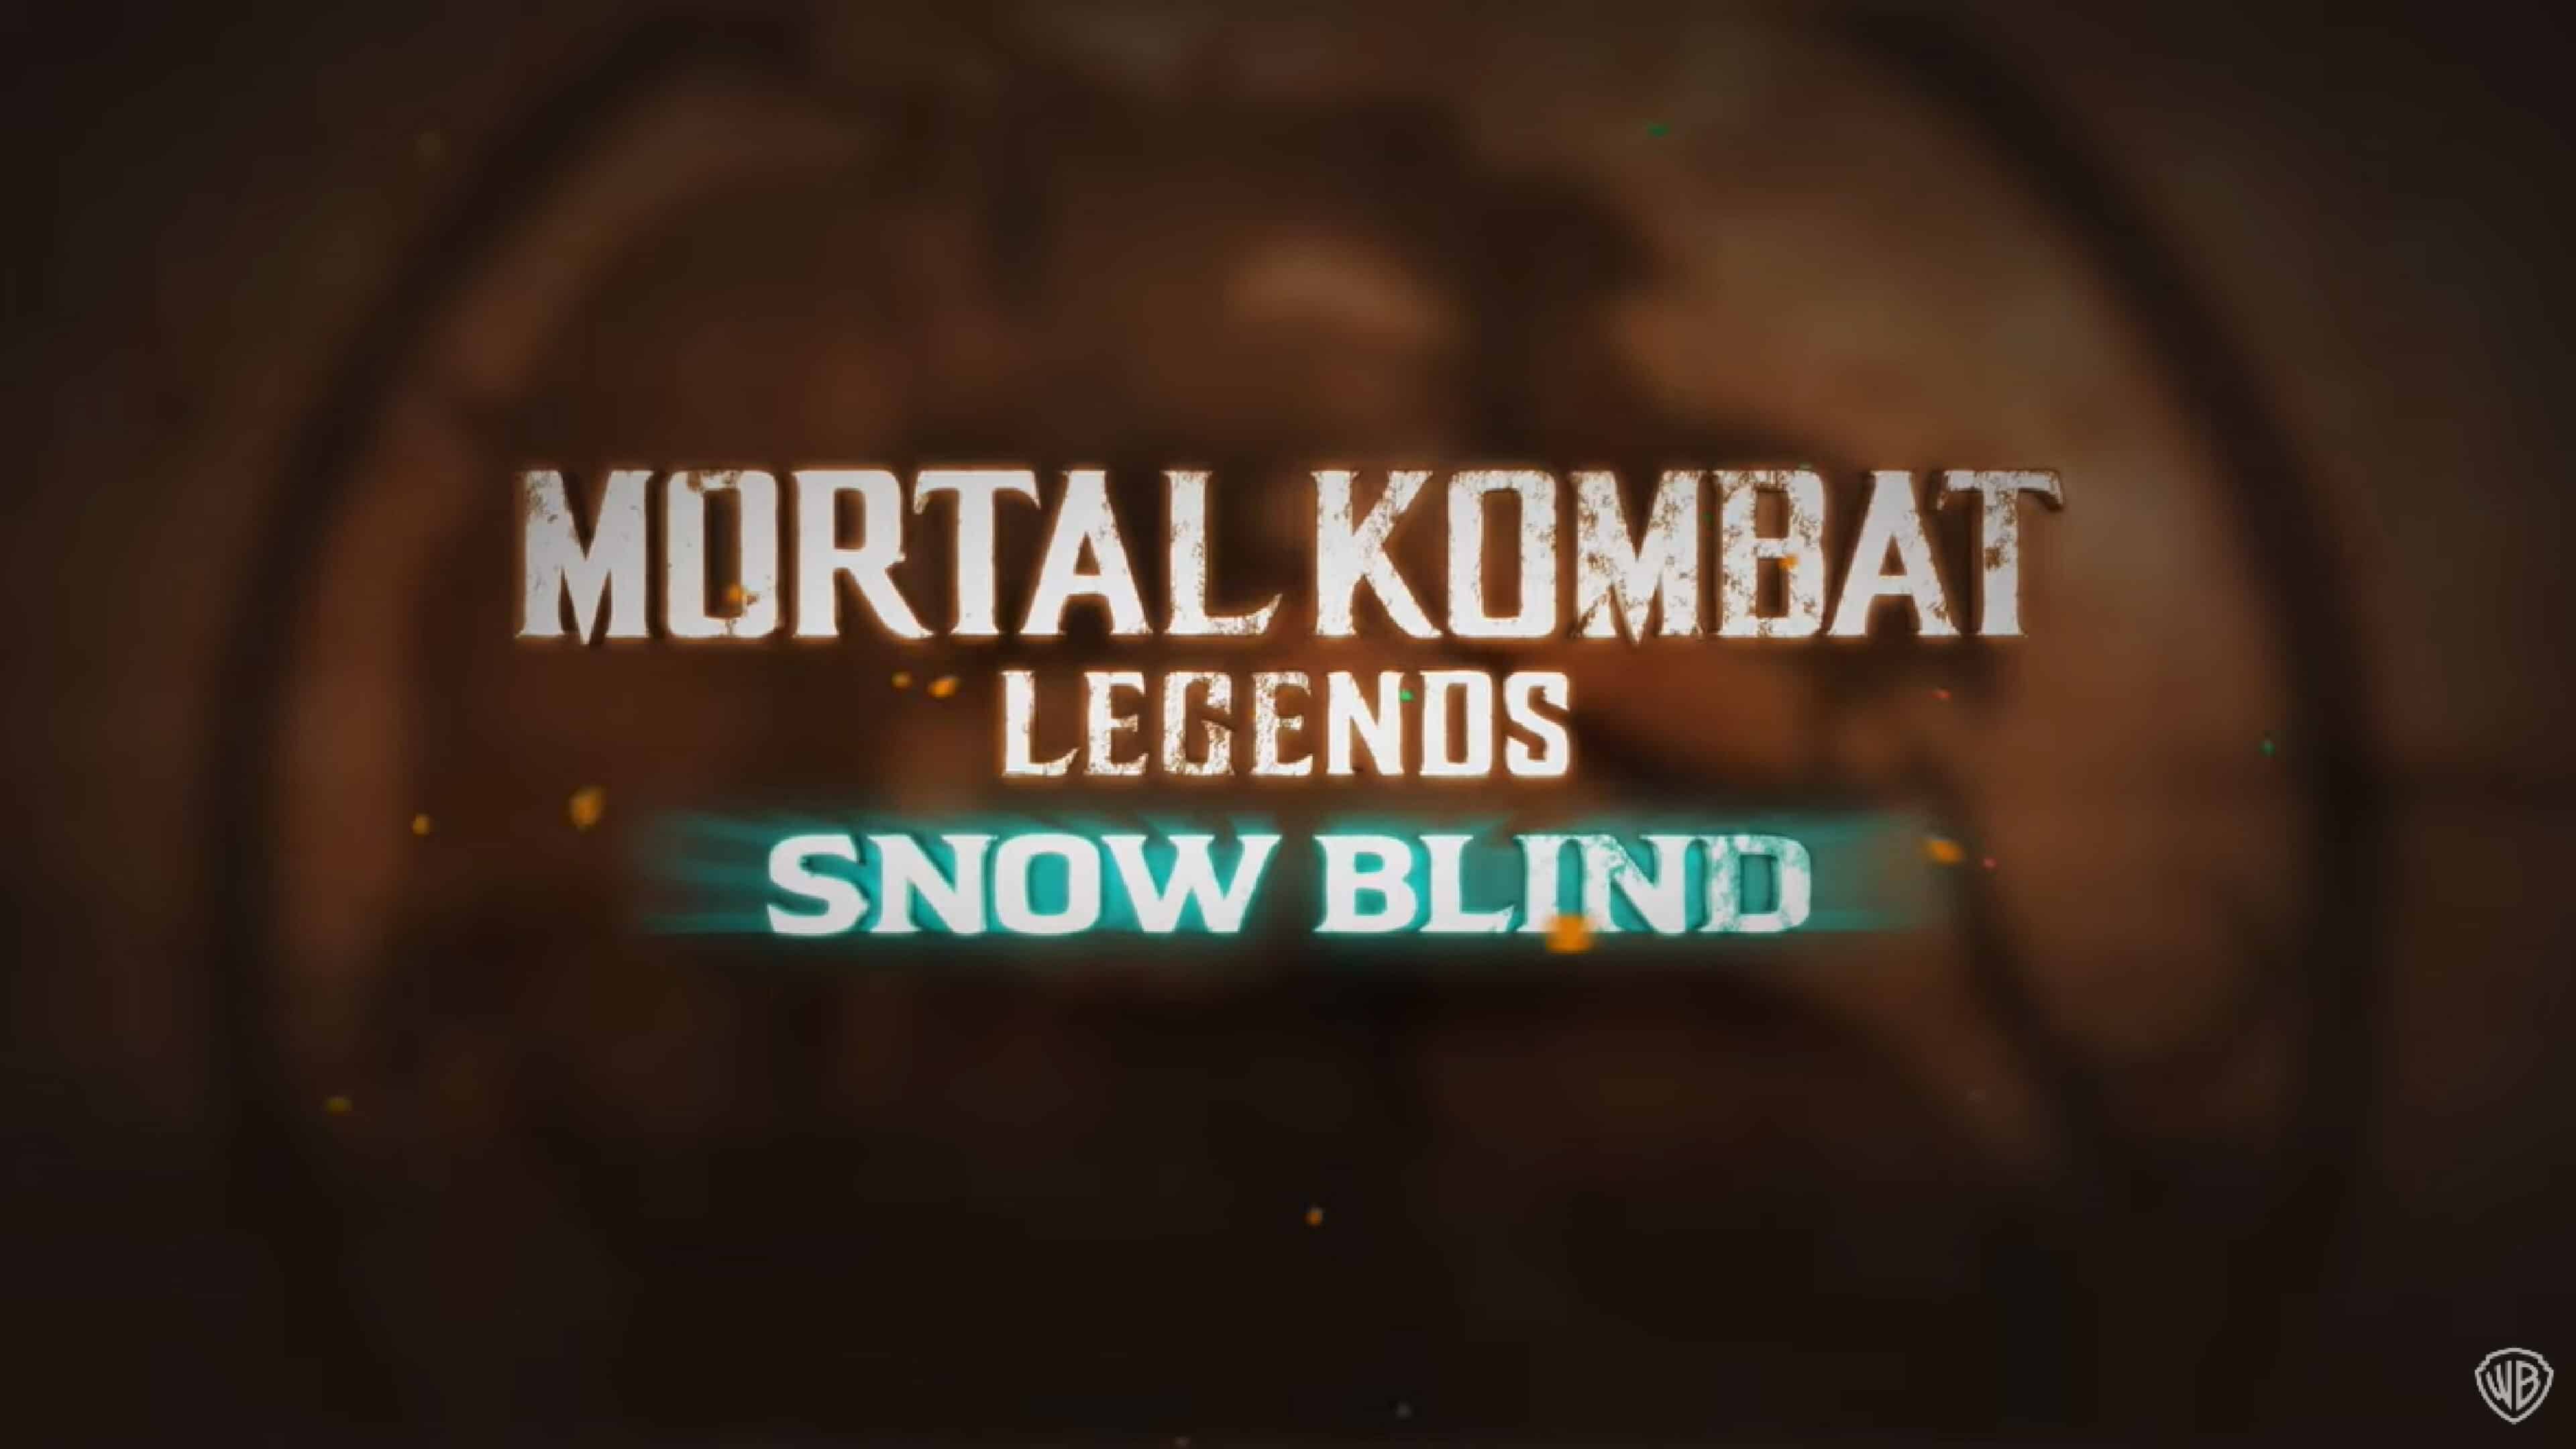 Mortal Kombat Legends: Snow Blind revela su primer trailer